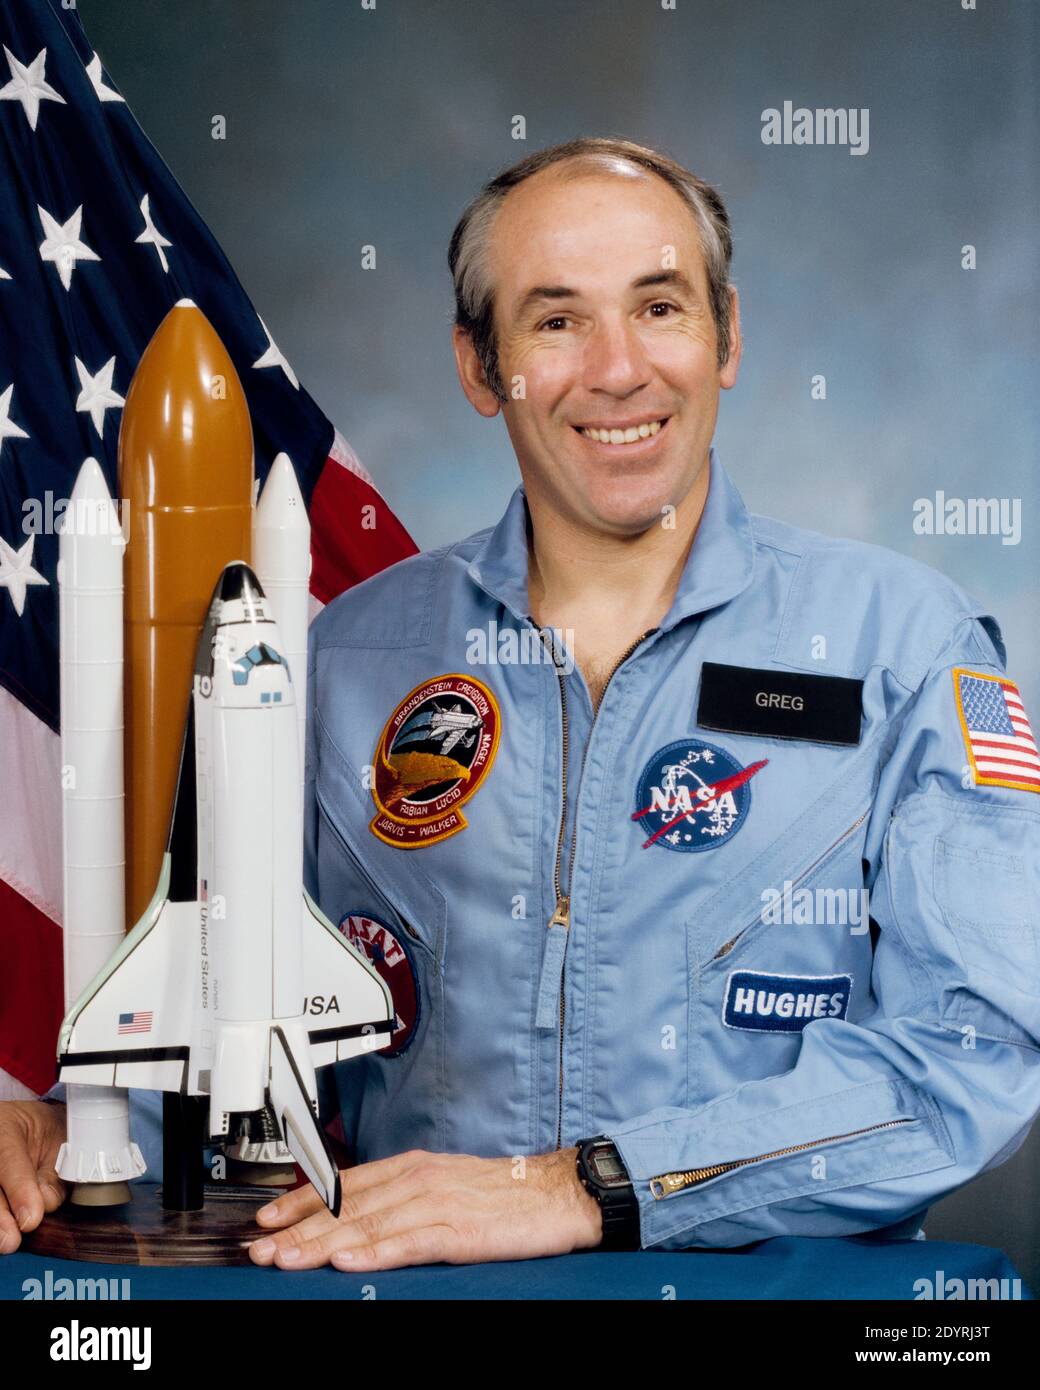 Gregory Bruce Jarvis (1944 – 28 de enero de 1986) Ingeniero estadounidense que murió durante la destrucción del Transbordador Espacial Challenger en la misión STS-51-L, donde sirvió como especialista en carga útil para aviones Hughes. Foto de stock